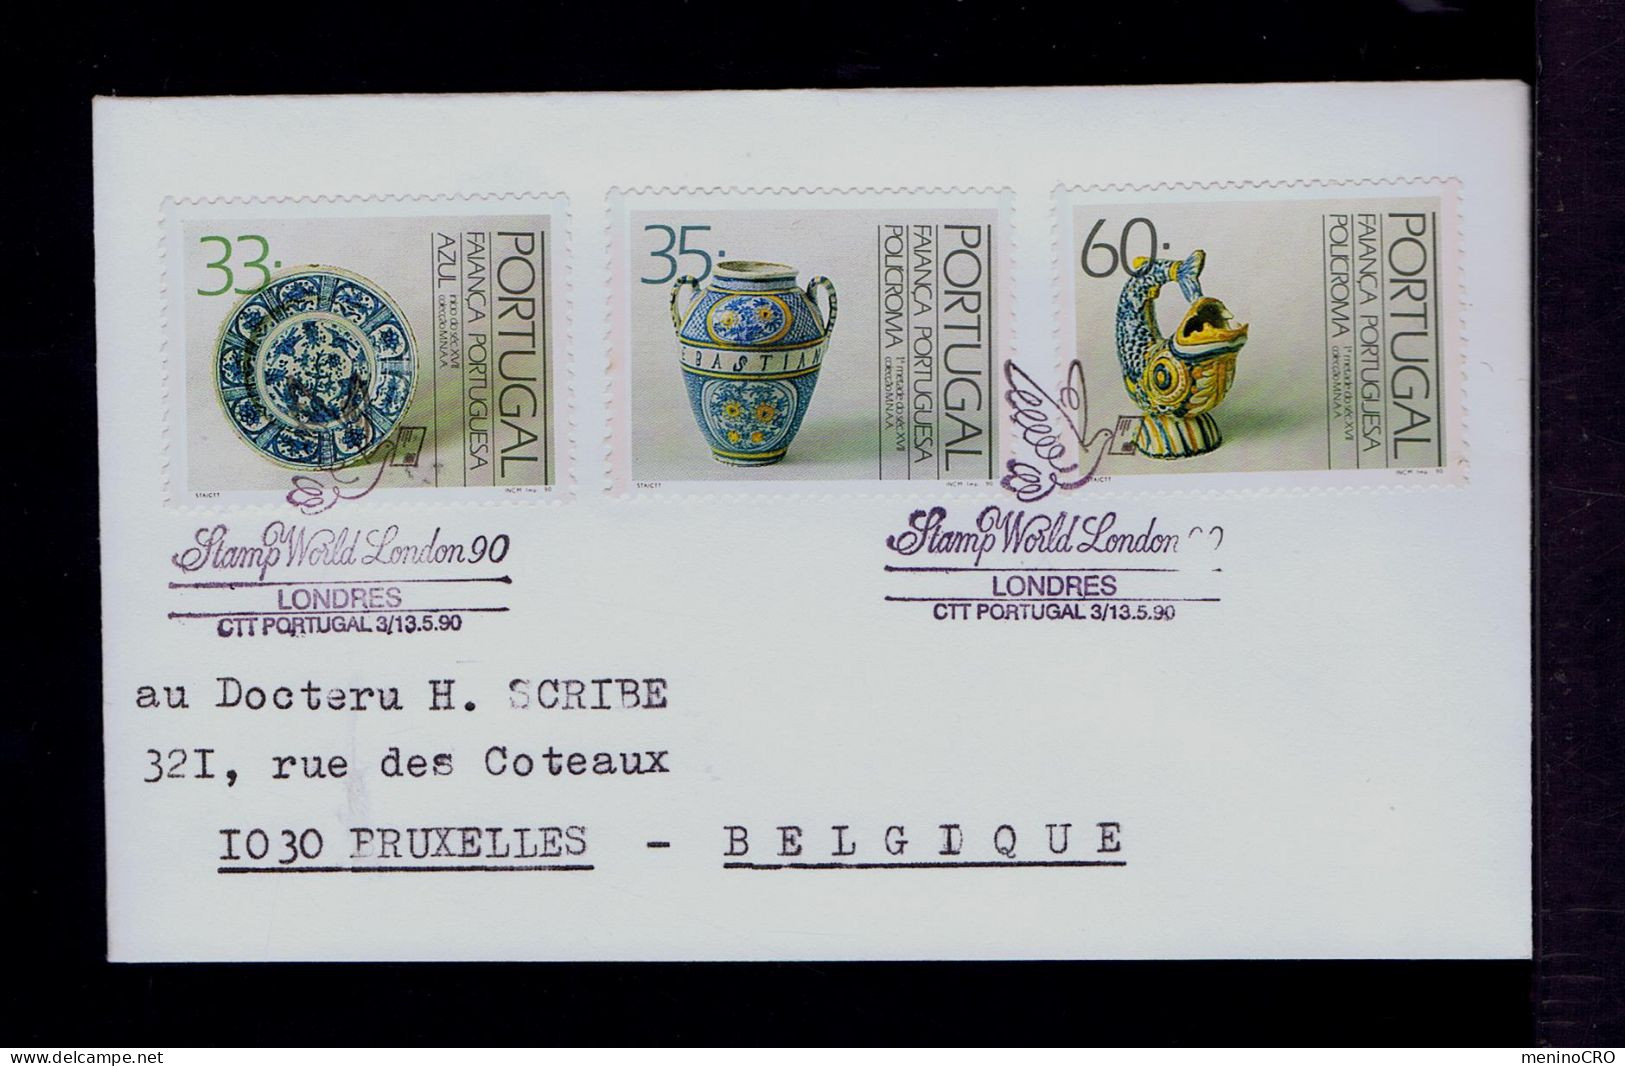 Gc8372 PORTUGAL "Stamp World London'90" -SPECIAL Pmk) Faiance Blue Porcelain Costumes Cultures Mailed Londres »Bruxelles - Porcelaine